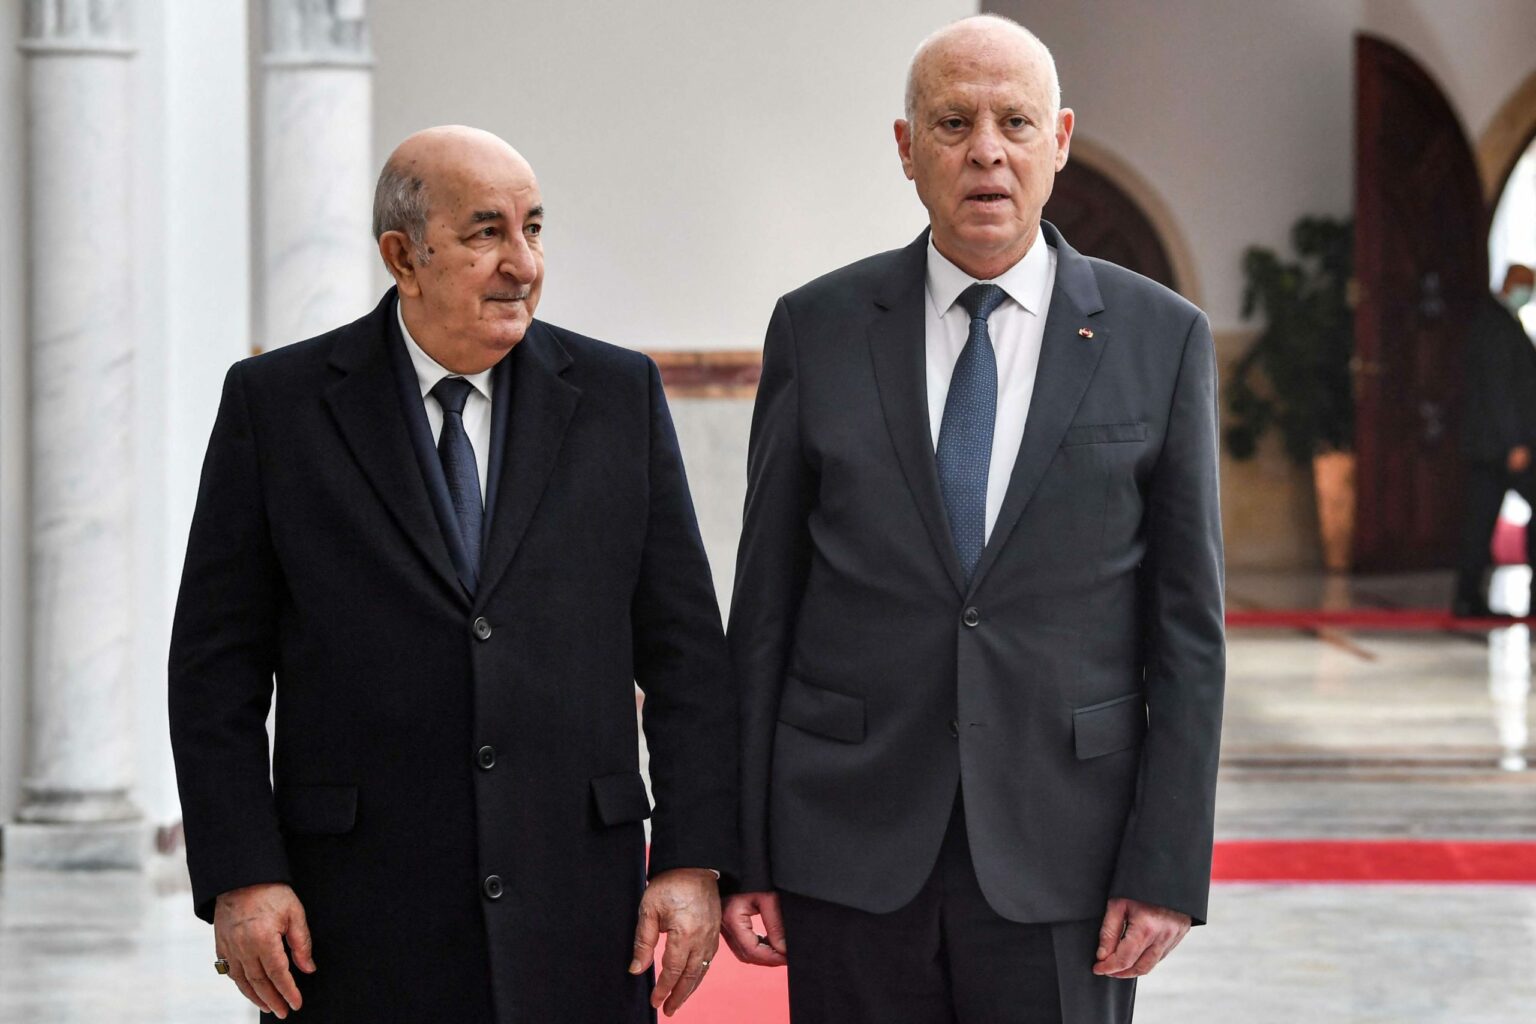 زلة لسان لخبير جزائري تكشف المستور بين الجزائر و تونس